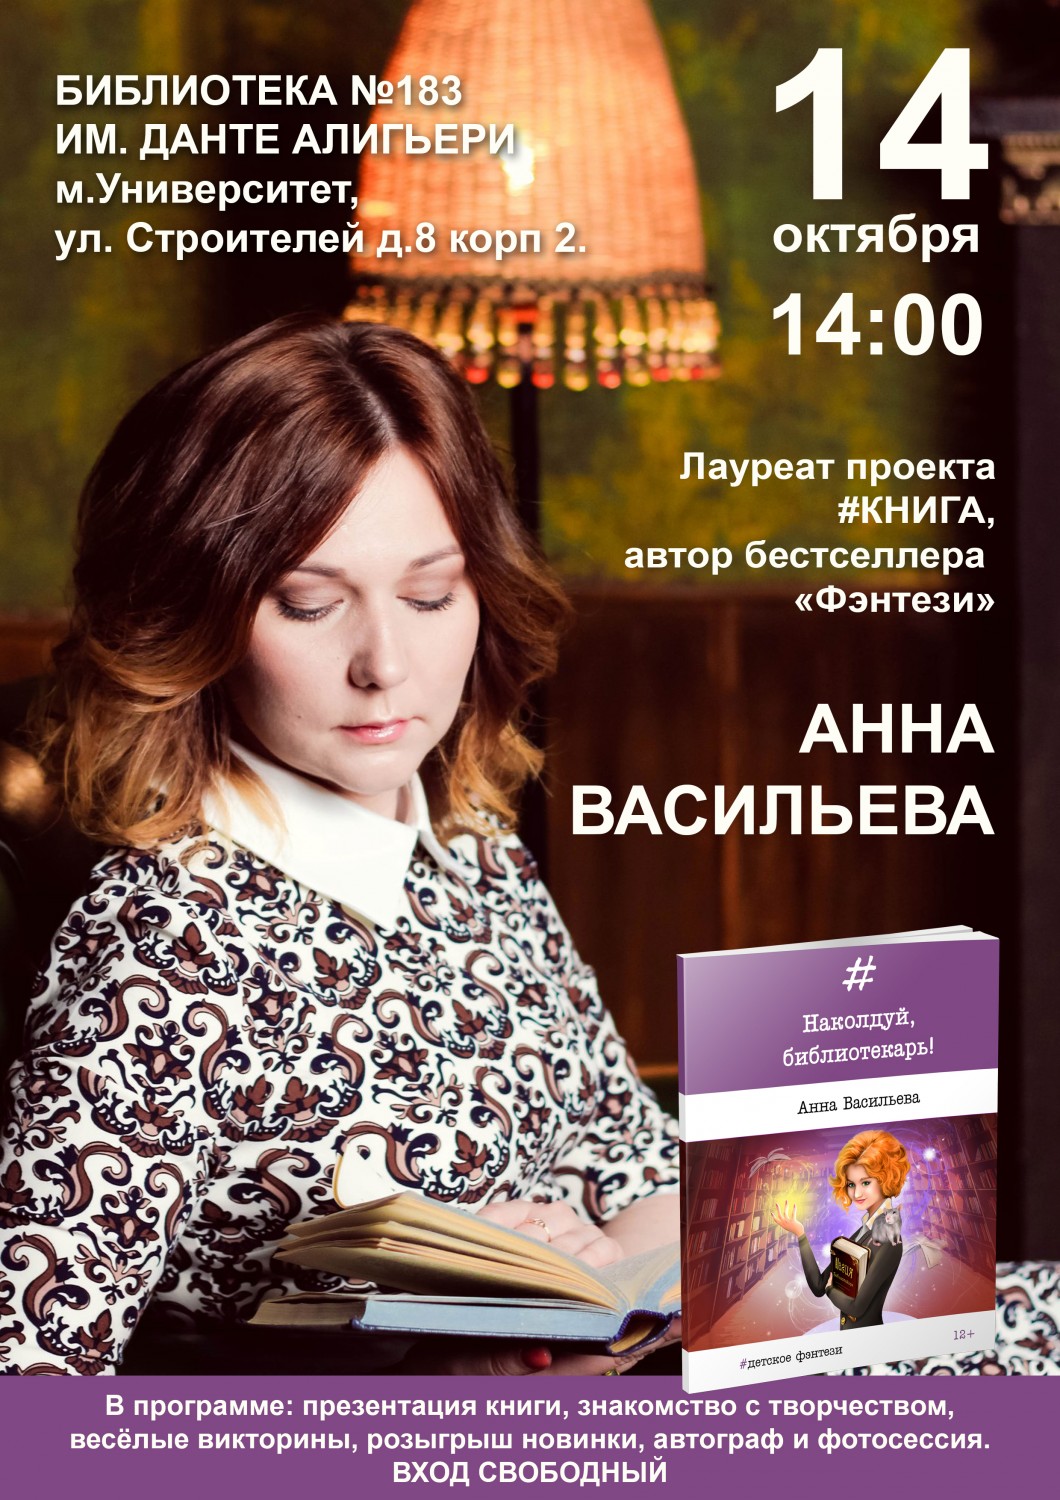 Презентация книги Анны Васильевой 